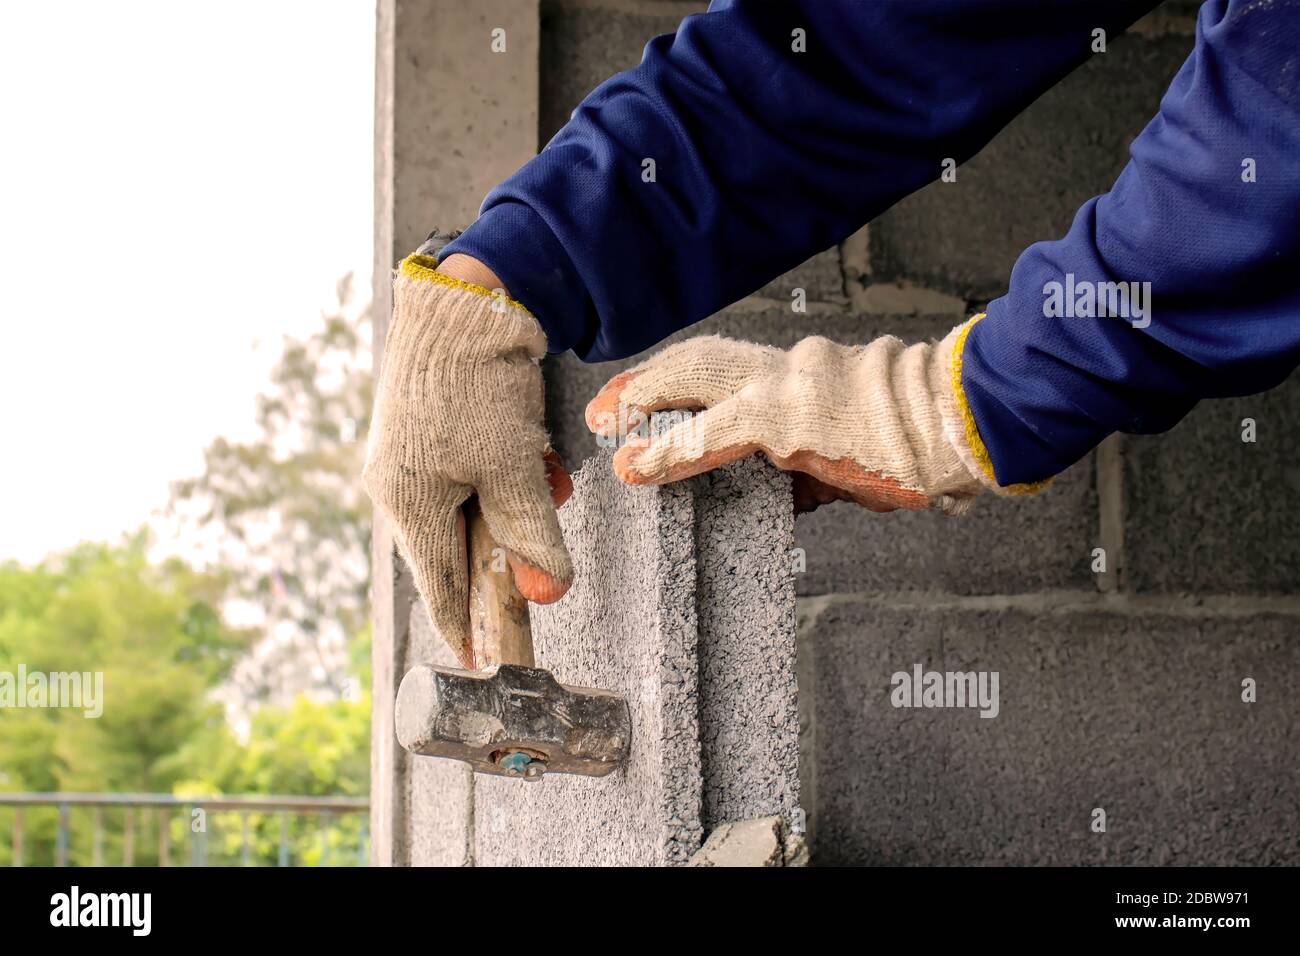 Bauarbeiter verwenden den Hammer, um die Ziegel auf die Ebene zu schlagen, um Zementwände, Hausbau und Innendekoration Ideen zu bauen. Stockfoto